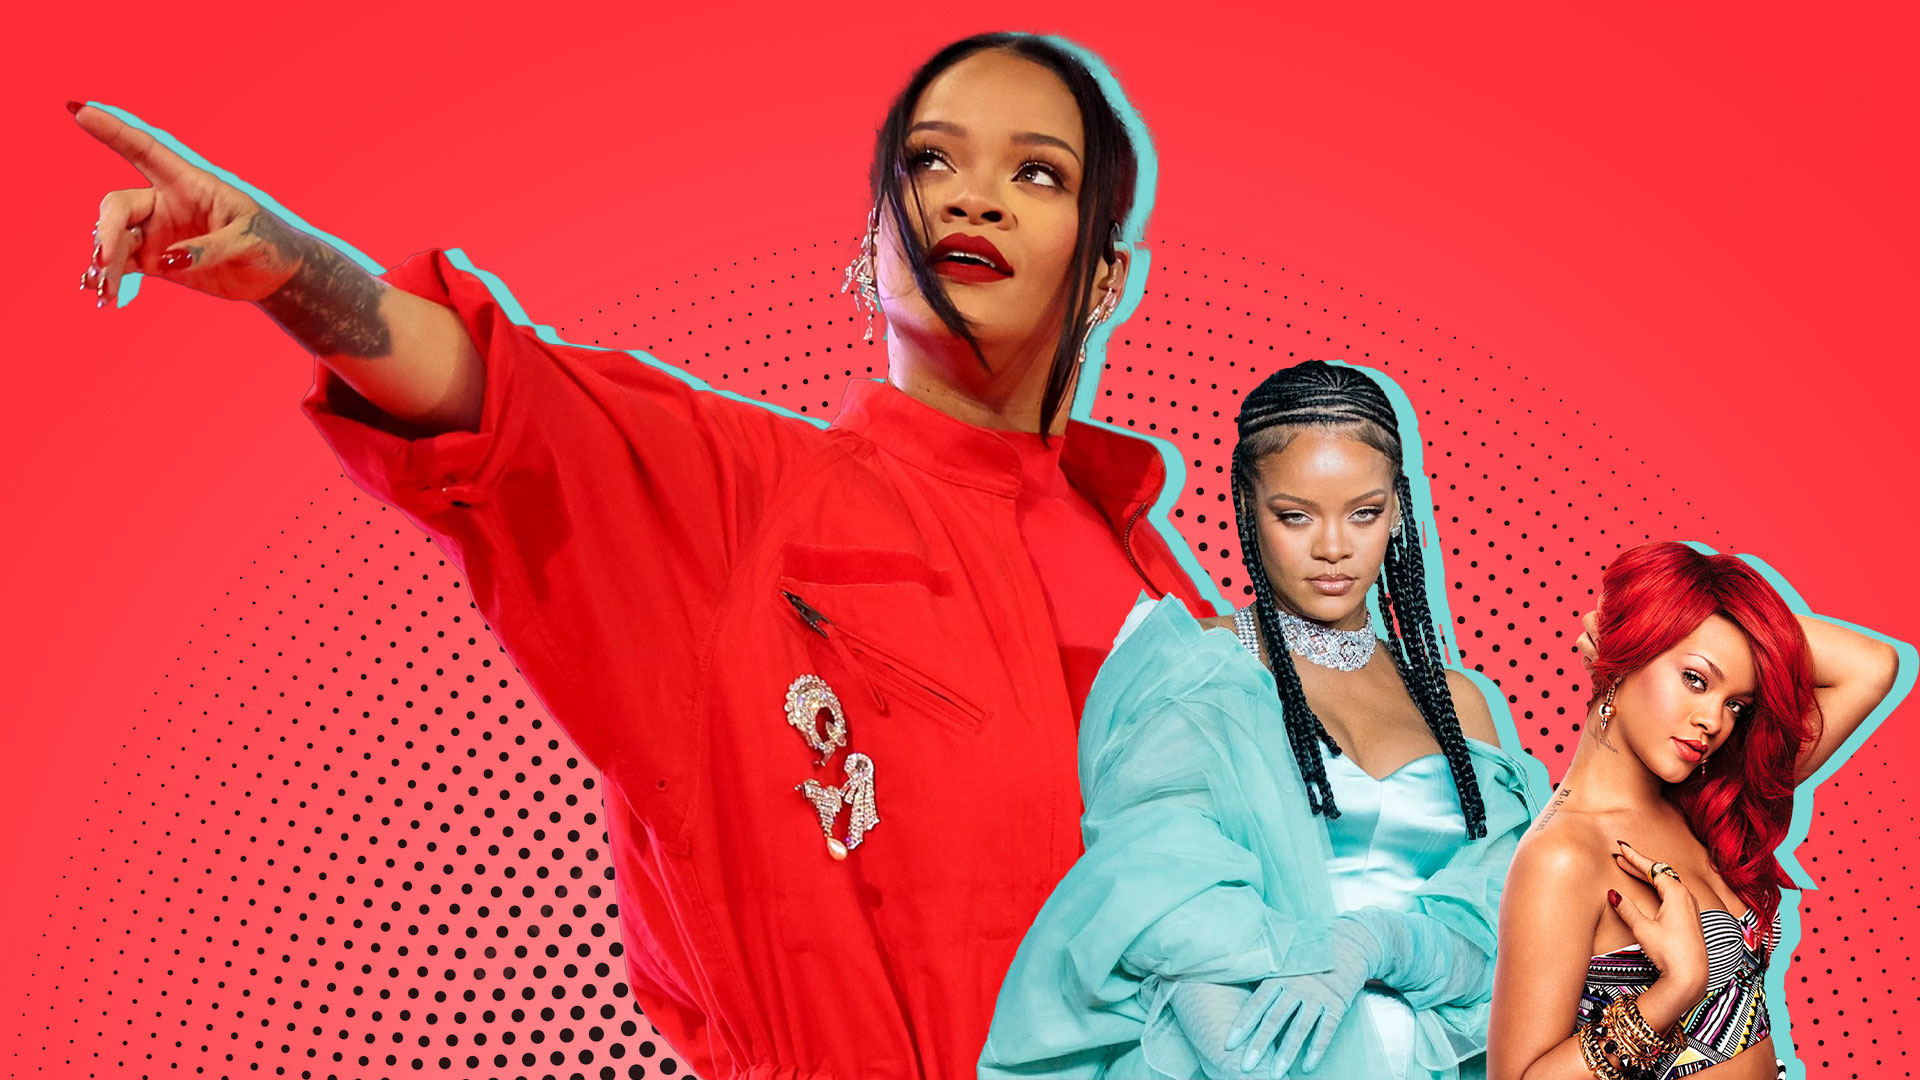 La transformación musical de Rihanna en fotos hasta mostrar a su adorable bebé en TikTok